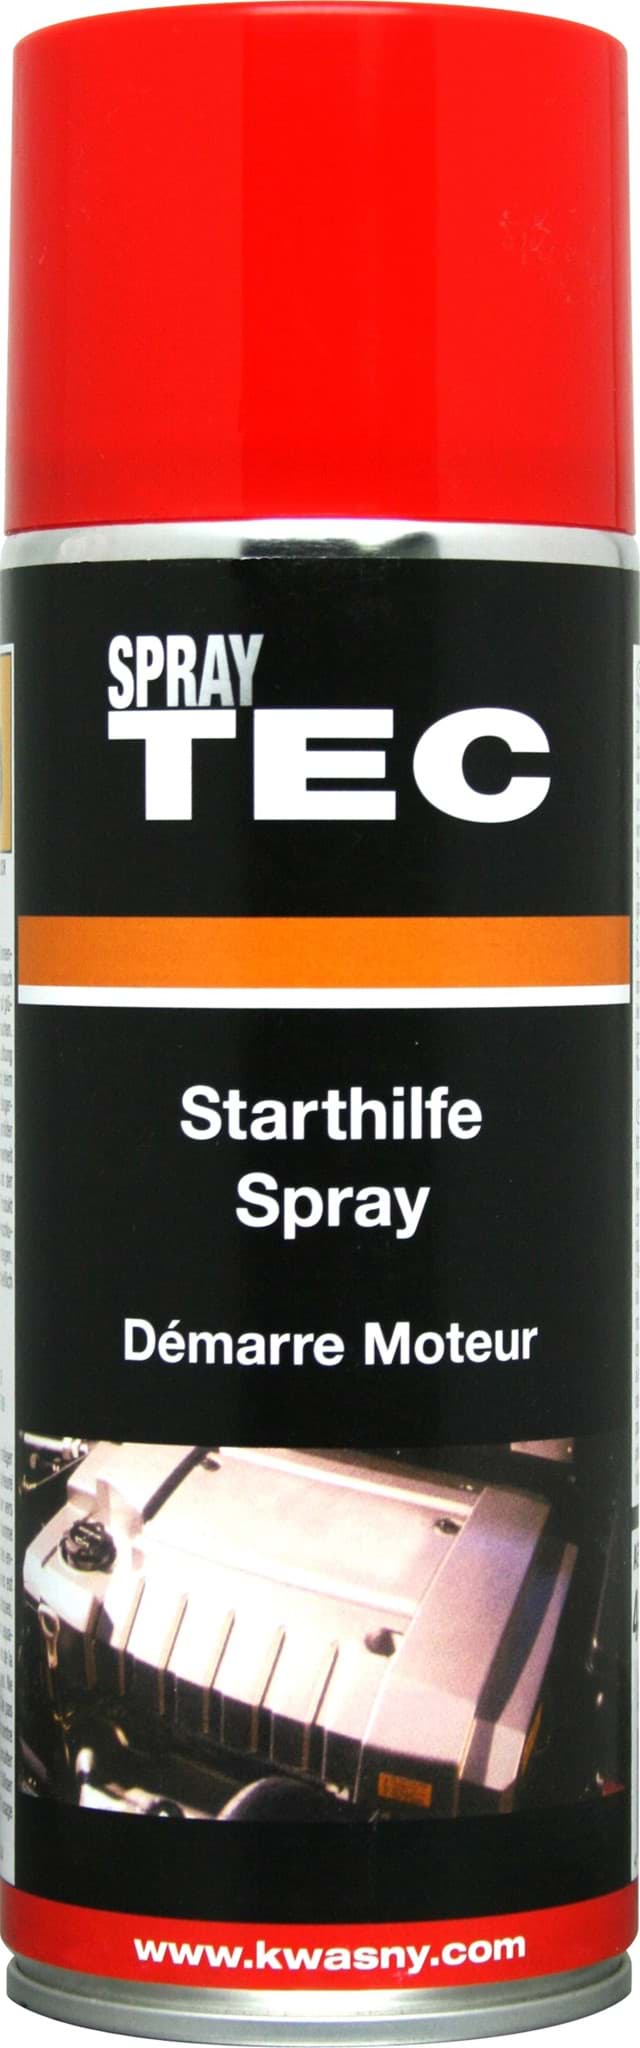 SprayTec Starthilfe-Spray 400ml 235010 resmi